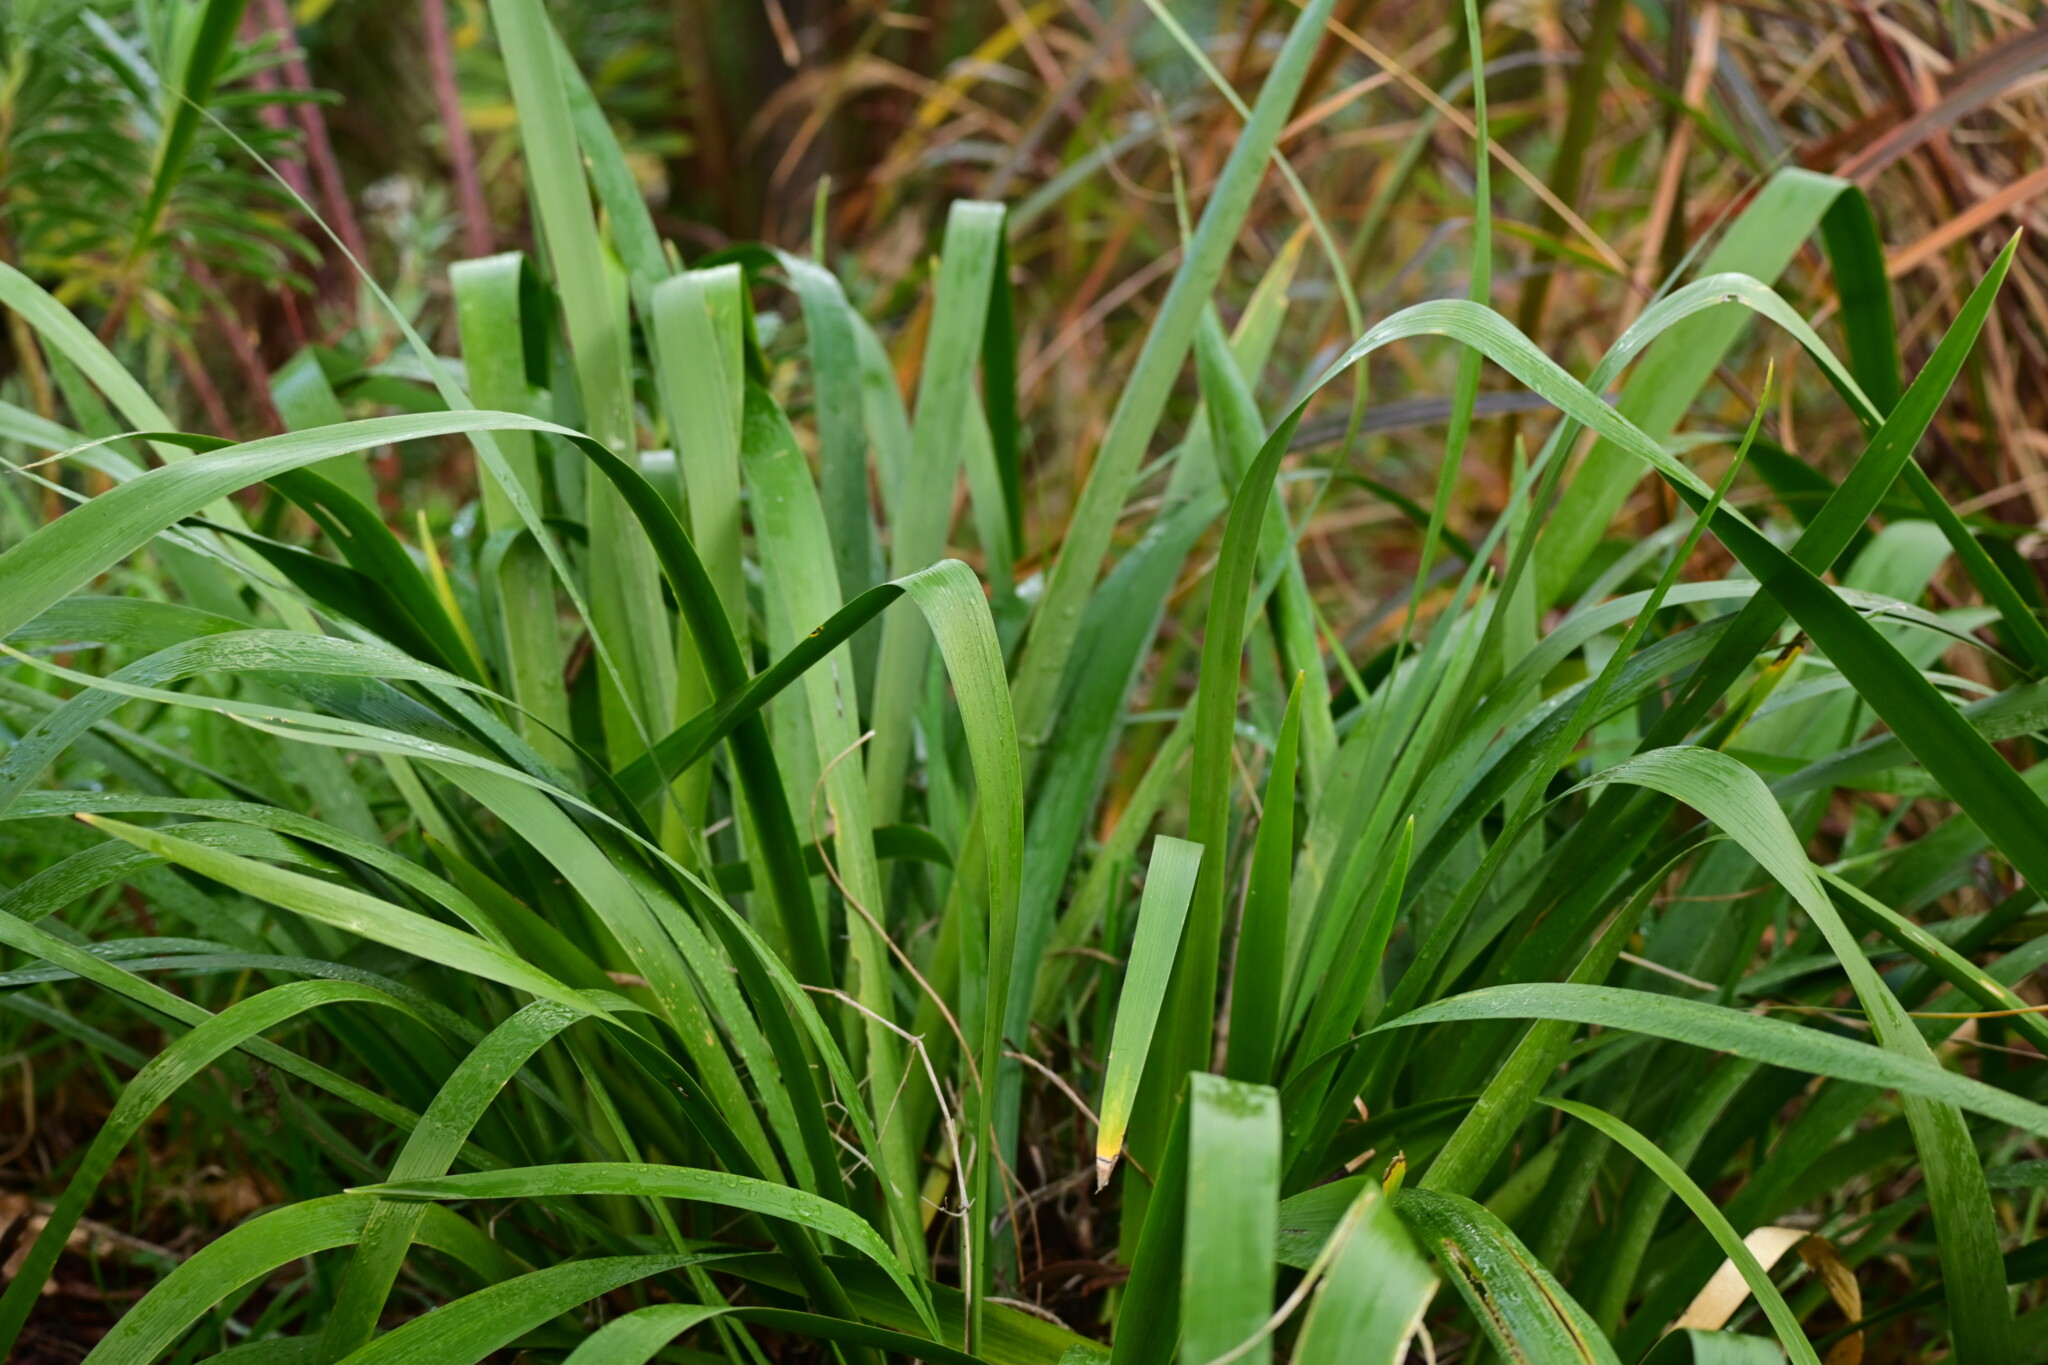 PLANT OF THE WEEK #55: Iris foetidissima